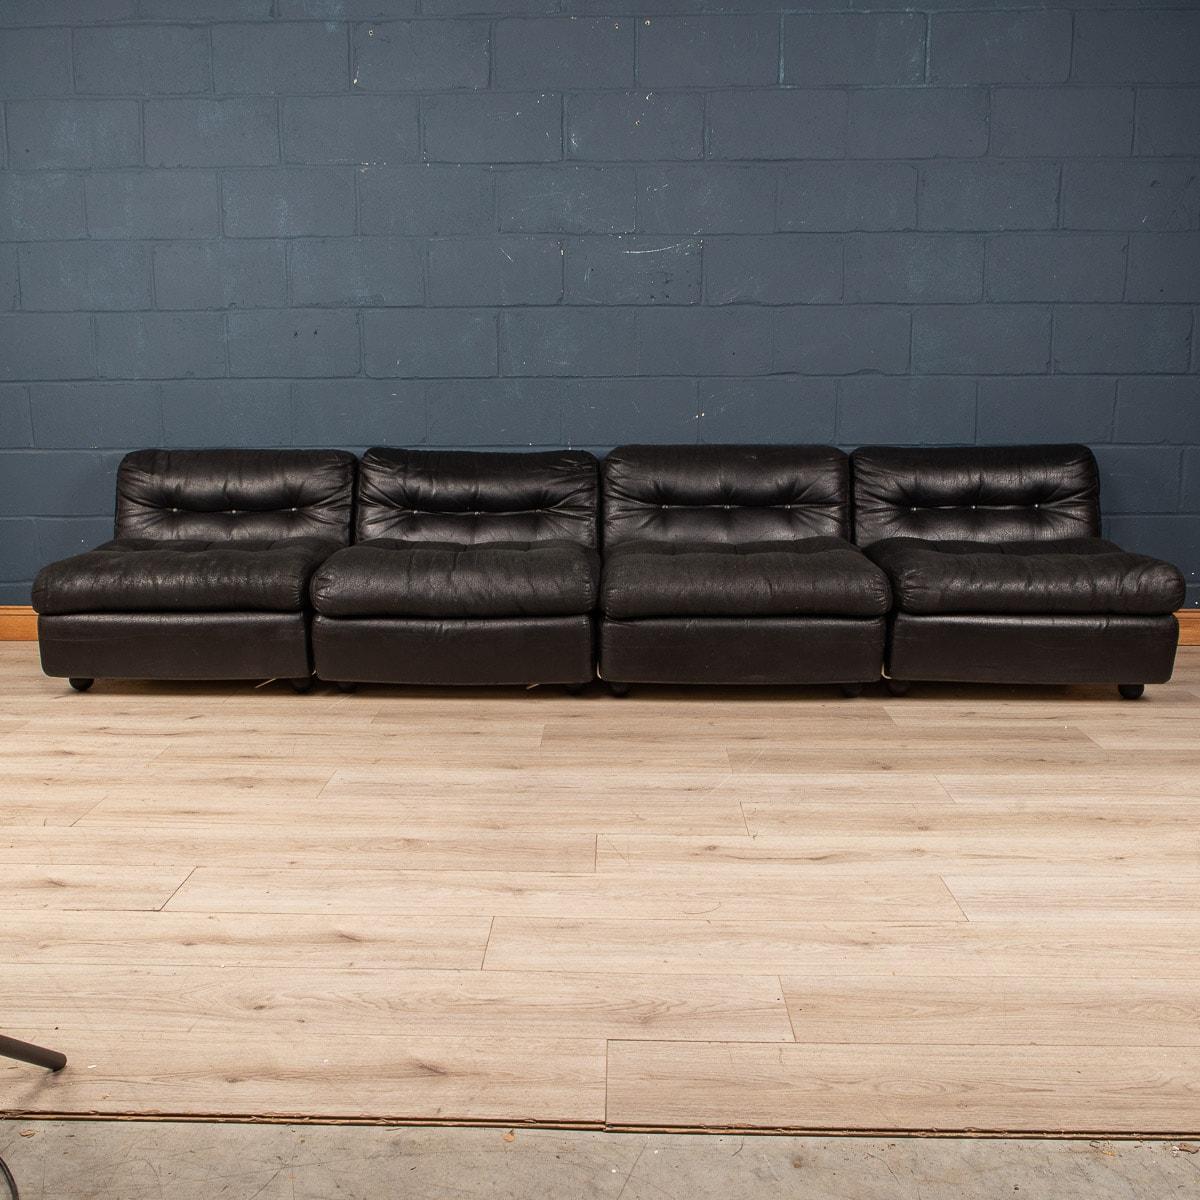 Ein vierteiliges modulares Sofa 